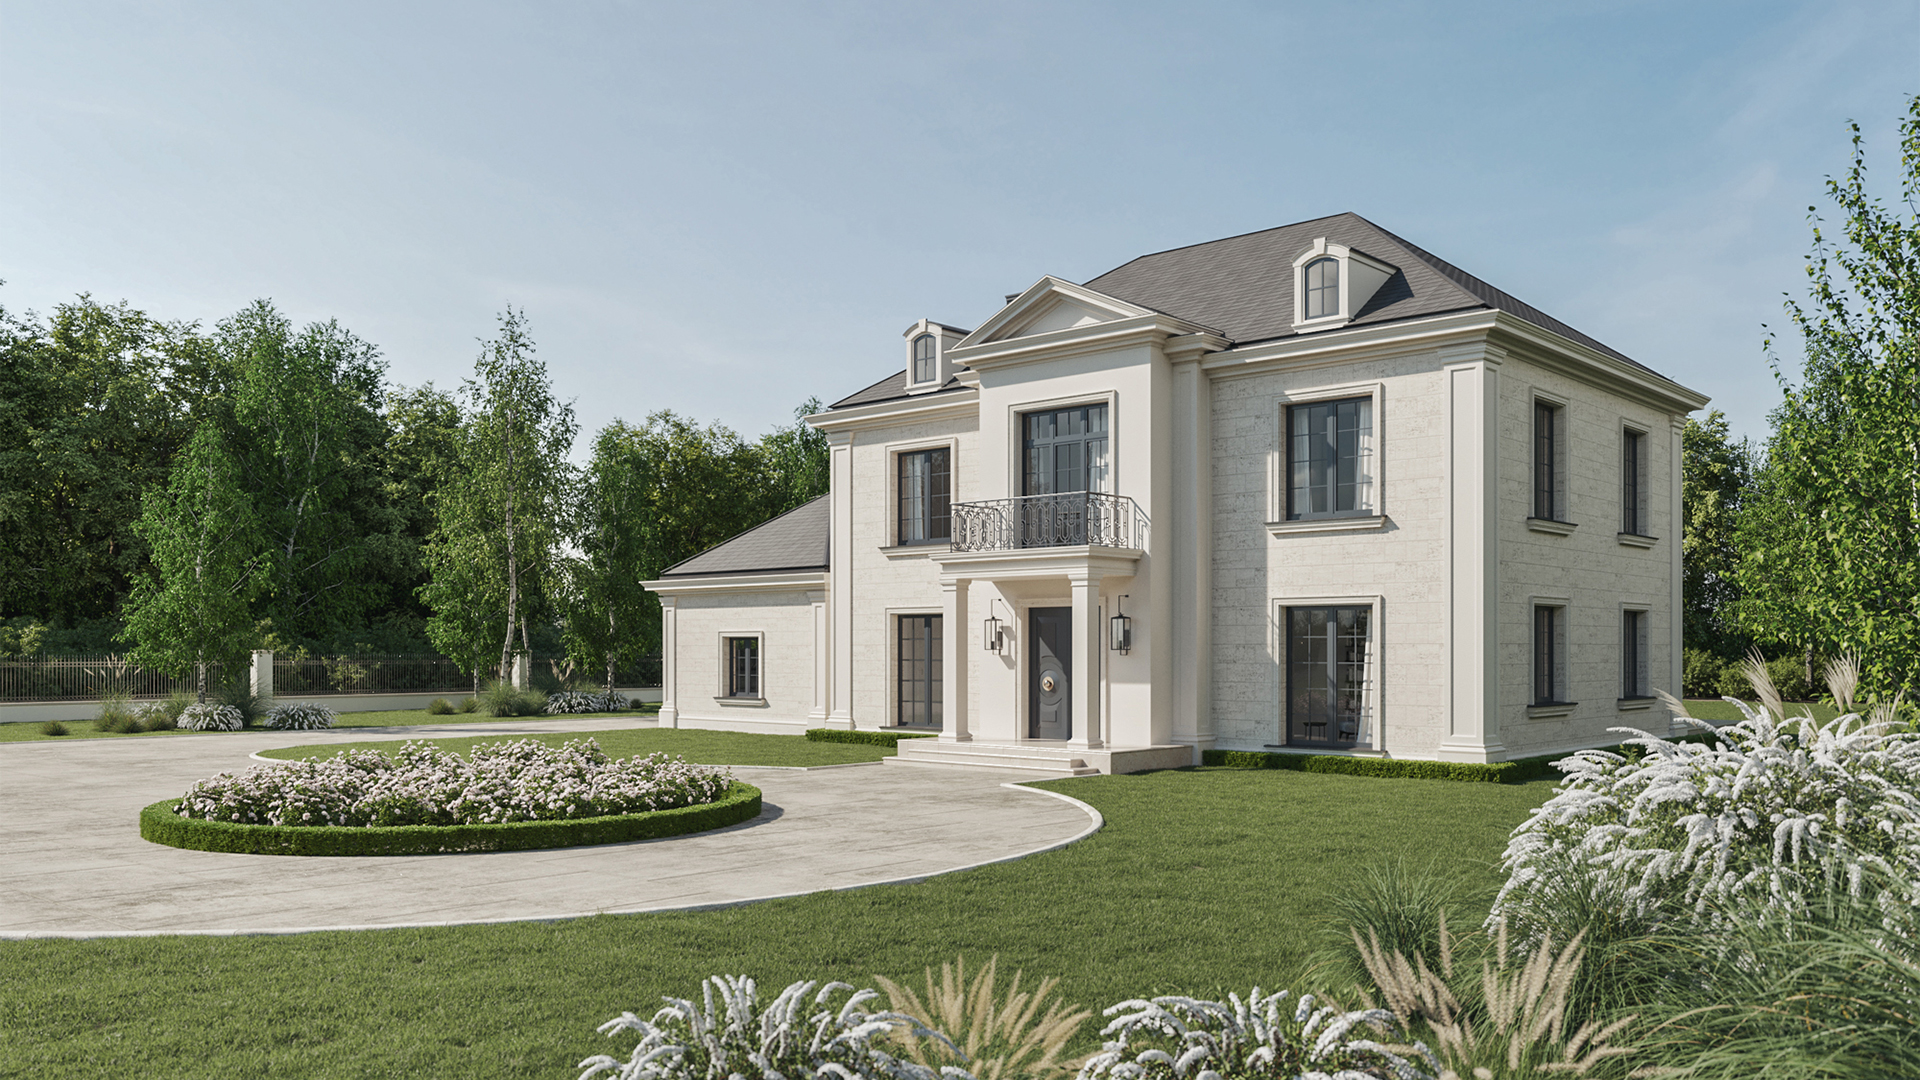 Design of the Villa villa Brillant classic